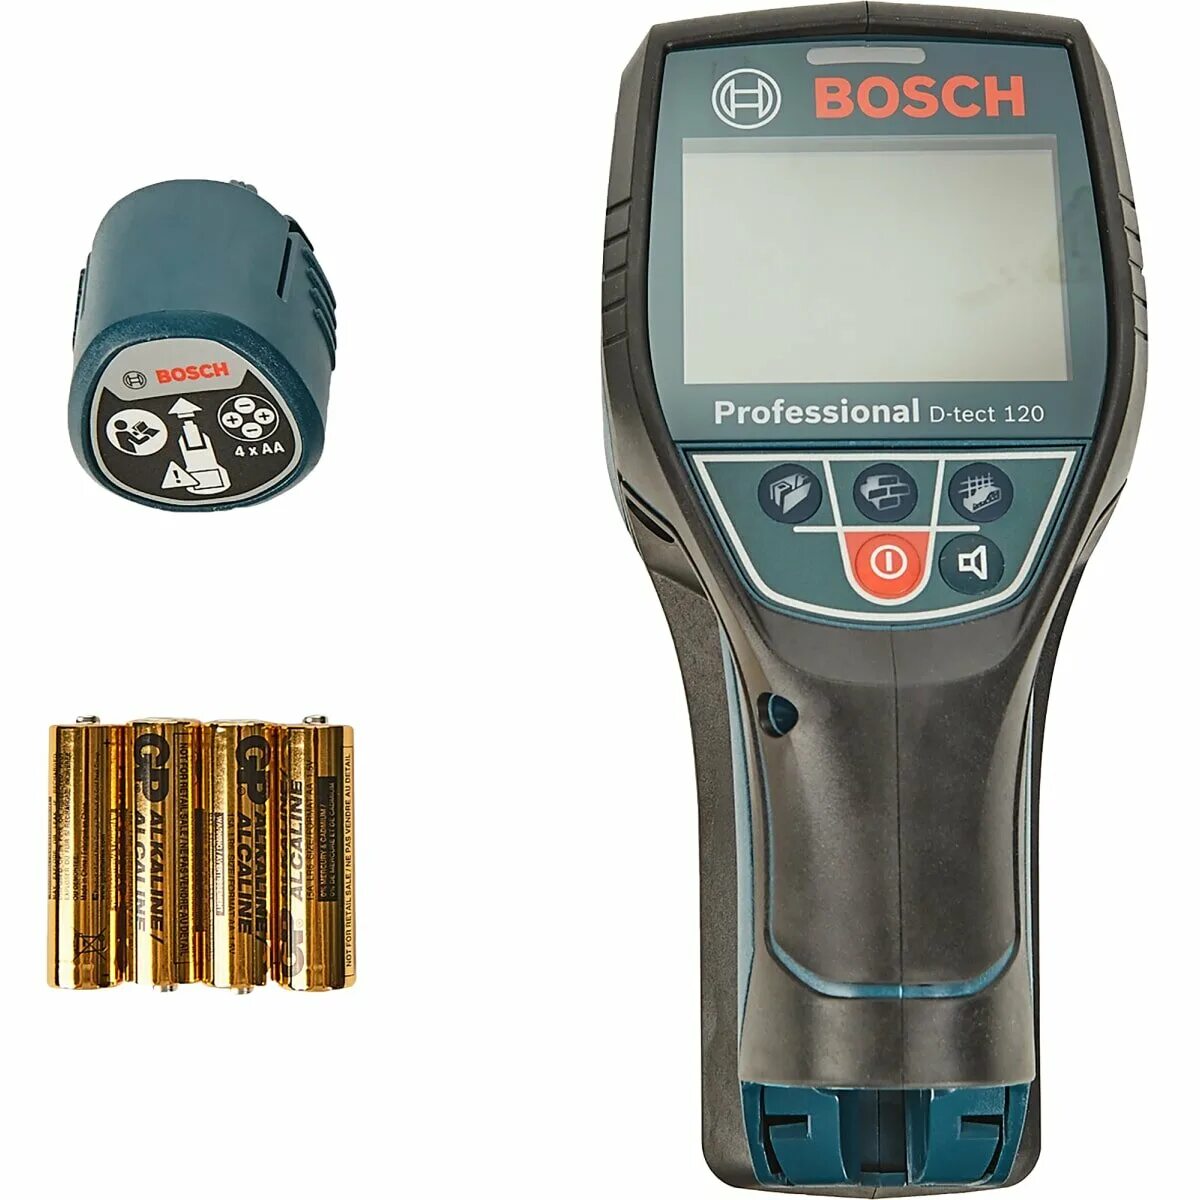 Bosch 120 детектор. Bosch d-tect 120 professional. Детектор d-tect 120. Детектор Bosch d-tect 100. Детектор Bosch Wallscanner d-tect 100.